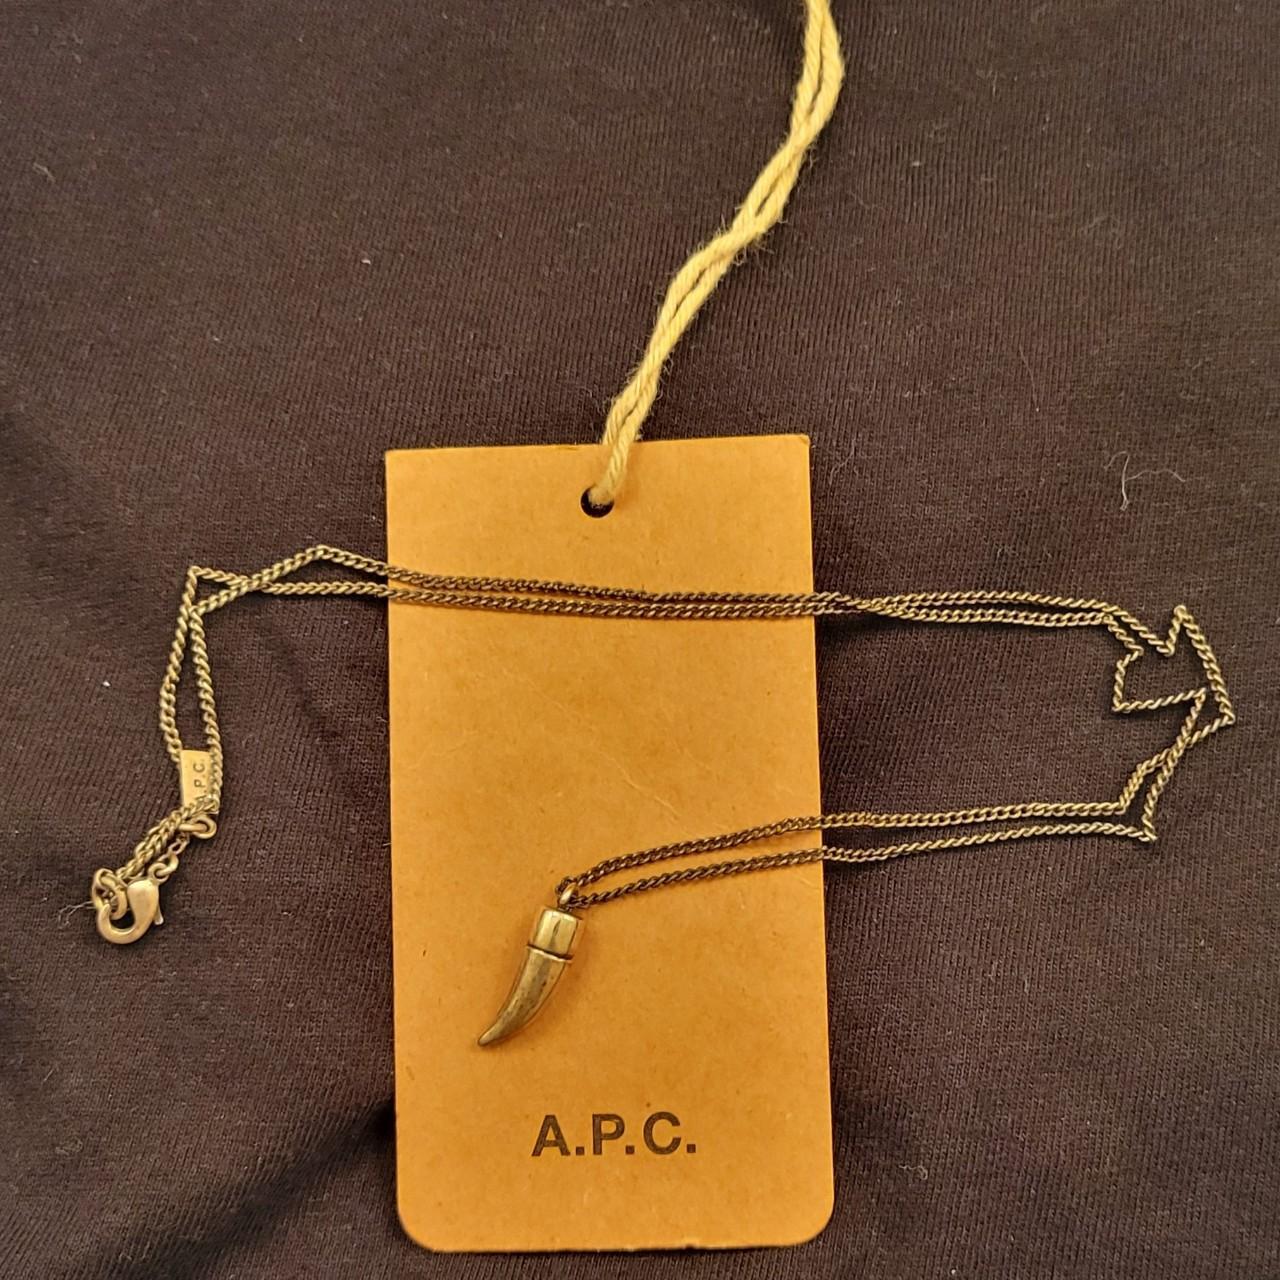 A.P.C. Men's Lock Necklace